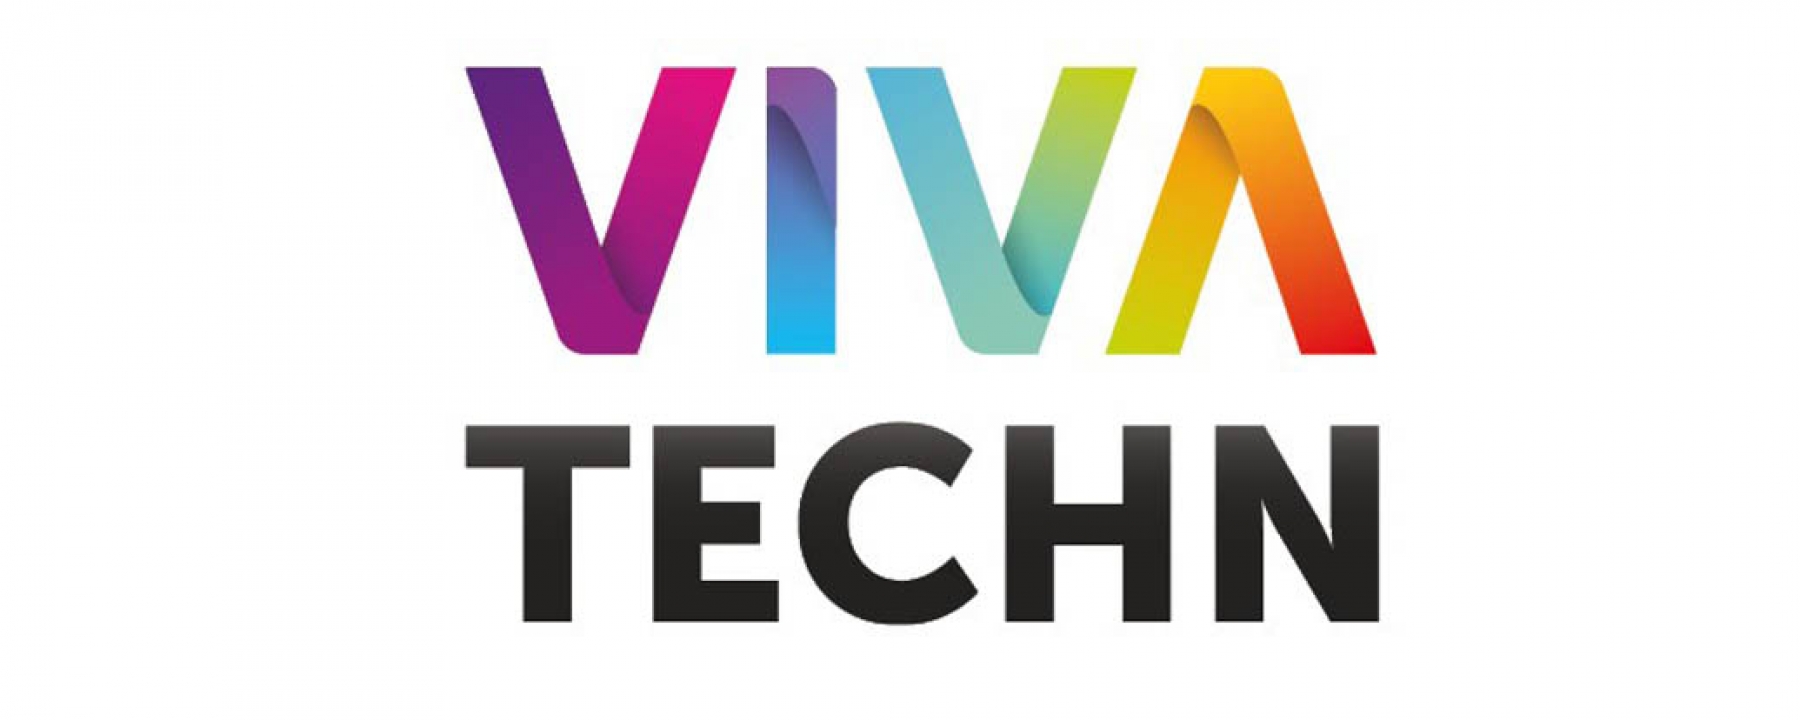 VivaTechTour organisé par VivaTech le 26 novembre